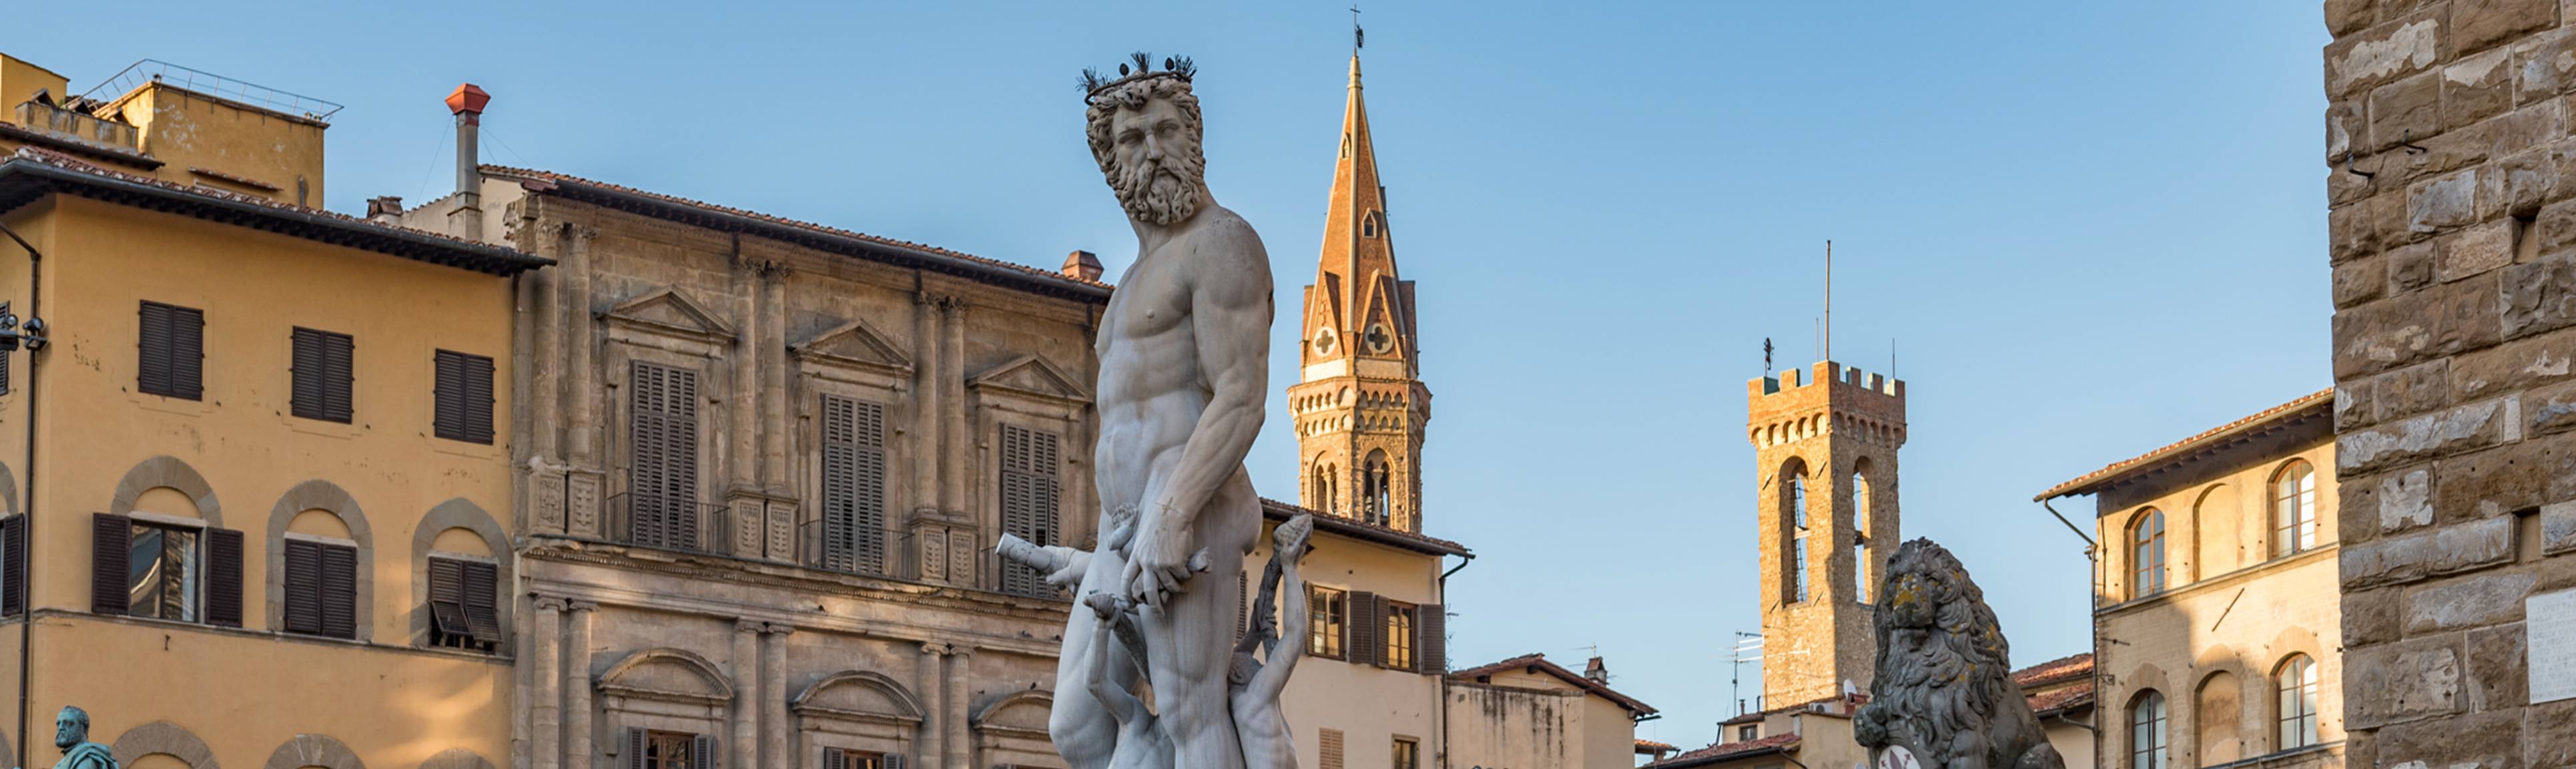 Statue of Neptune at Piazza della Signoria in Florence